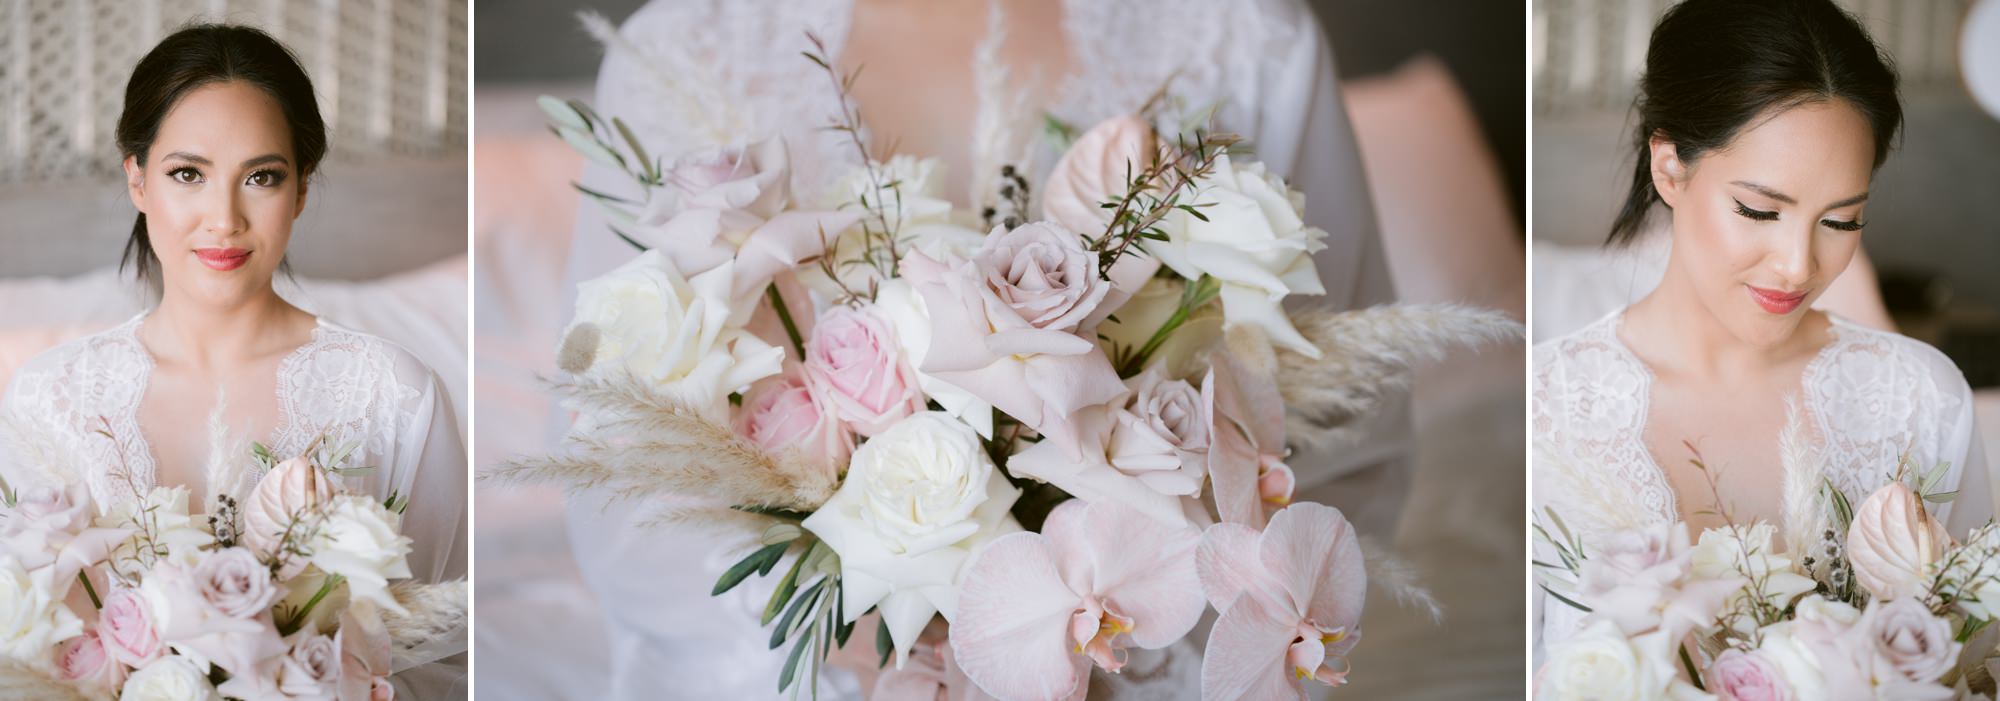 Victoria Park wedding photographer bride prep floral bouquet